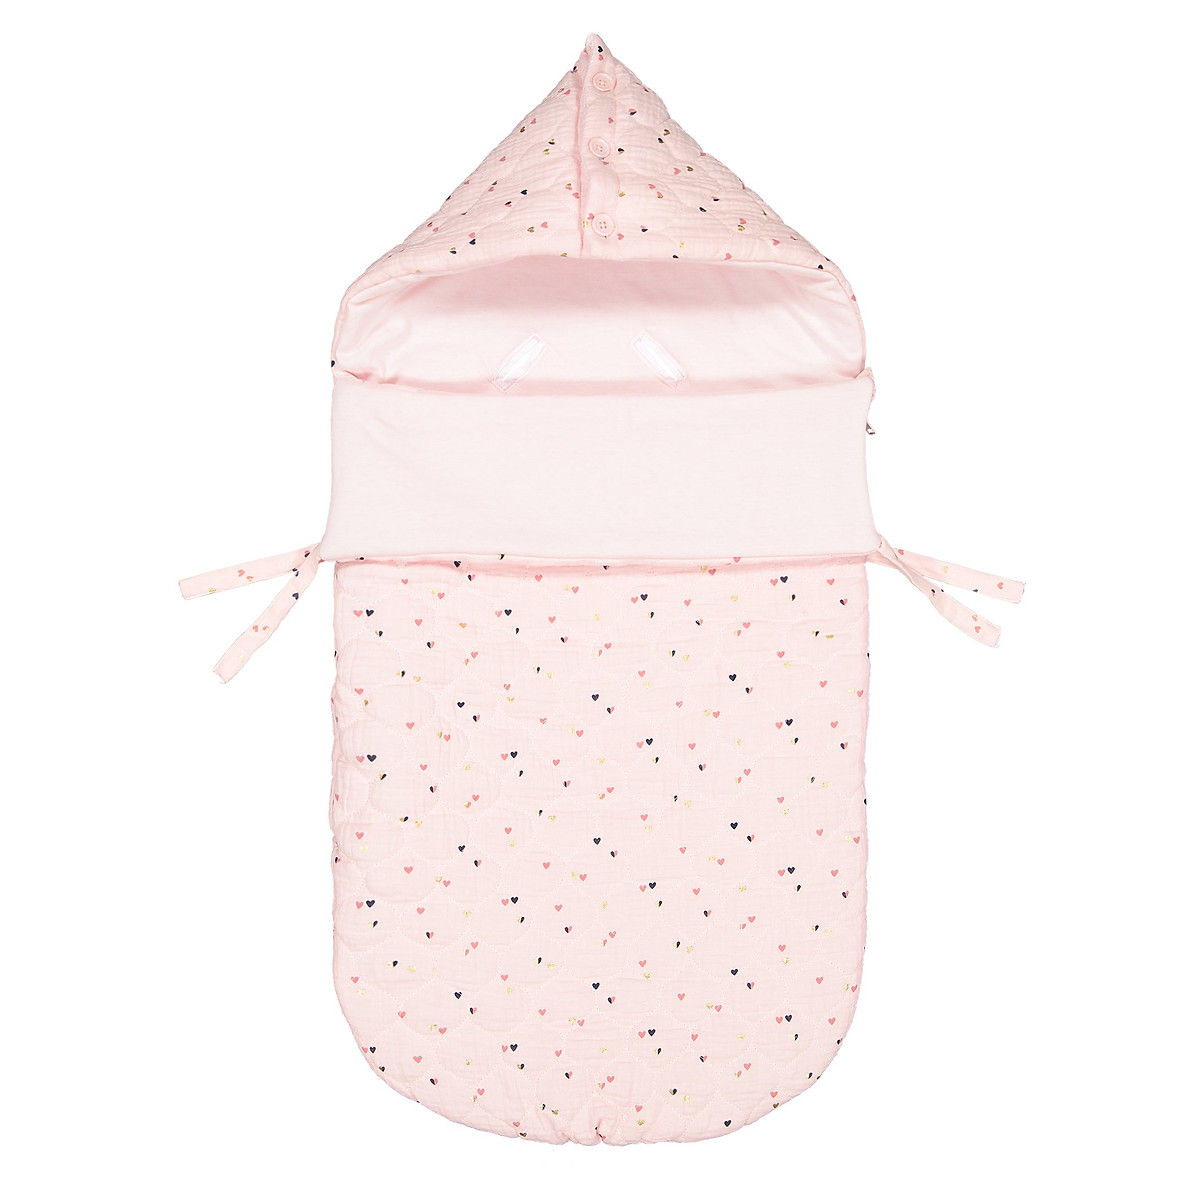 Конверт La Redoute Для новорожденных с капюшоном и рисунком единый размер розовый - фото 1